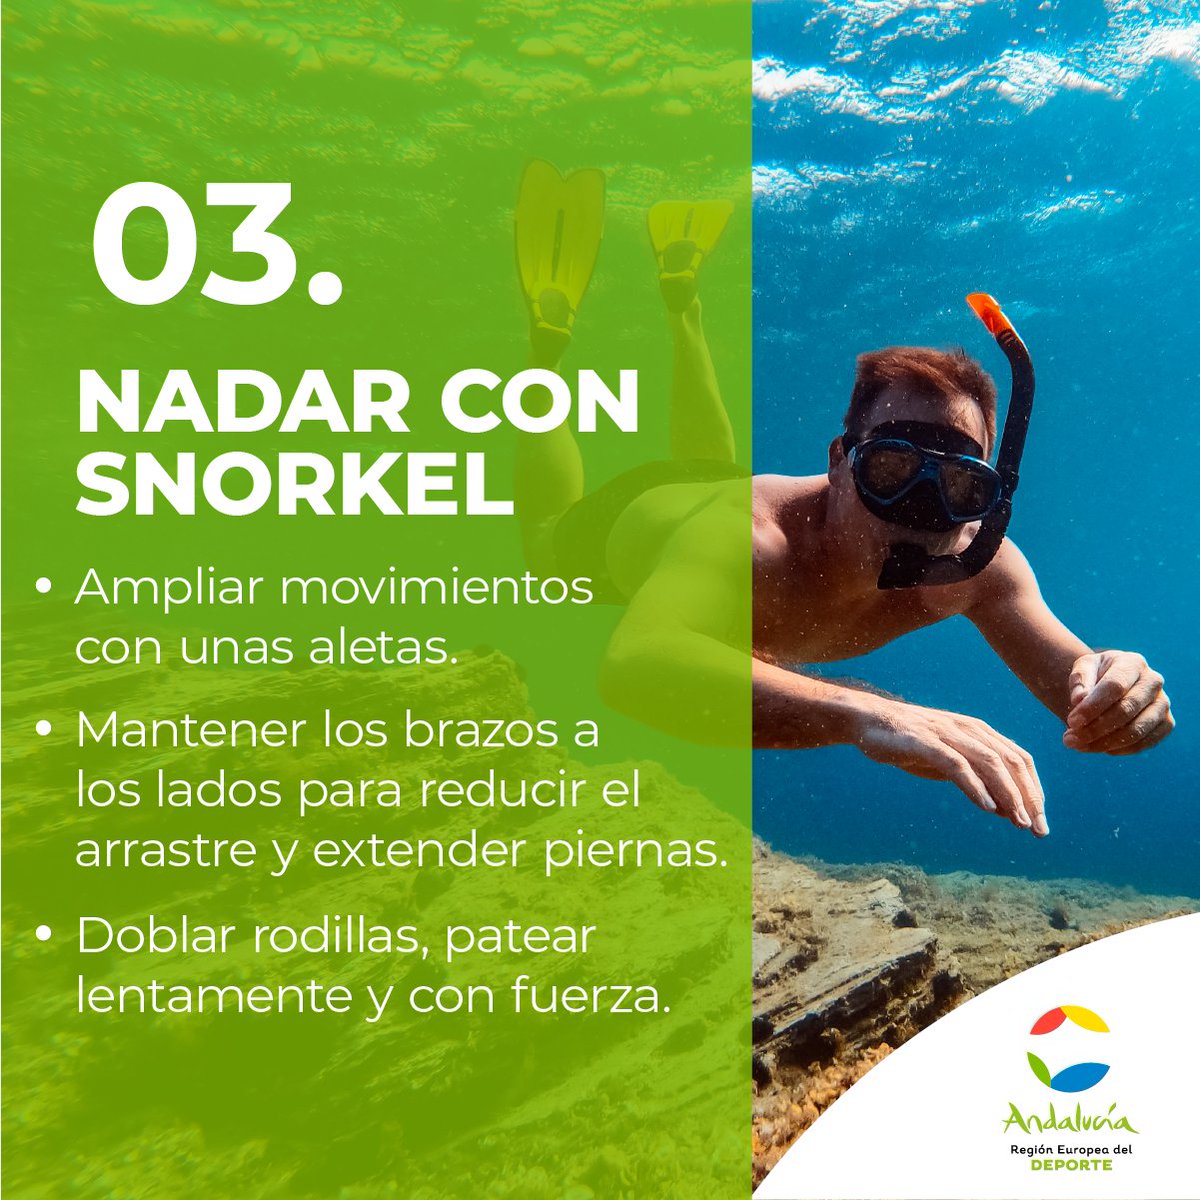 🌅 ¿Eres de los que cuentan las semanas para que llegue el verano? ¿Te gustan los deportes de agua? ¿Quieres comenzar en el mundo del Snorkel? 

Te dejamos 4 TIPS para principiantes 🤿 👇

#AndalucíaElLugarDelDeporte #Andalucía